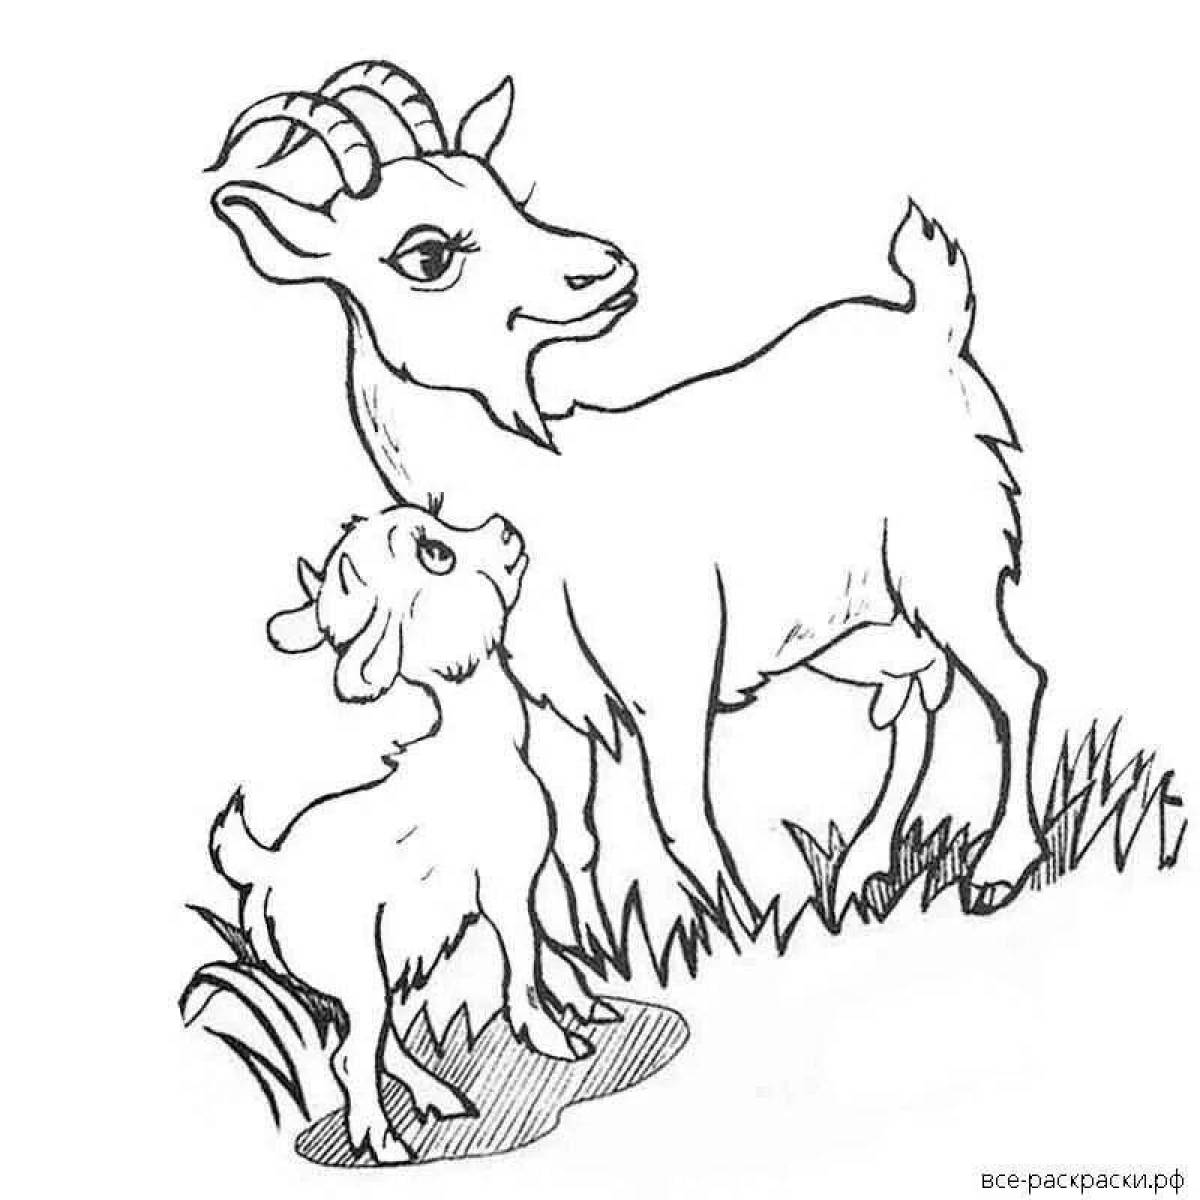 Распечатать раскраску козленка. Коза раскраска. Раскраска коза с козленком. Коза раскраска для детей. Козленок раскраска для детей.